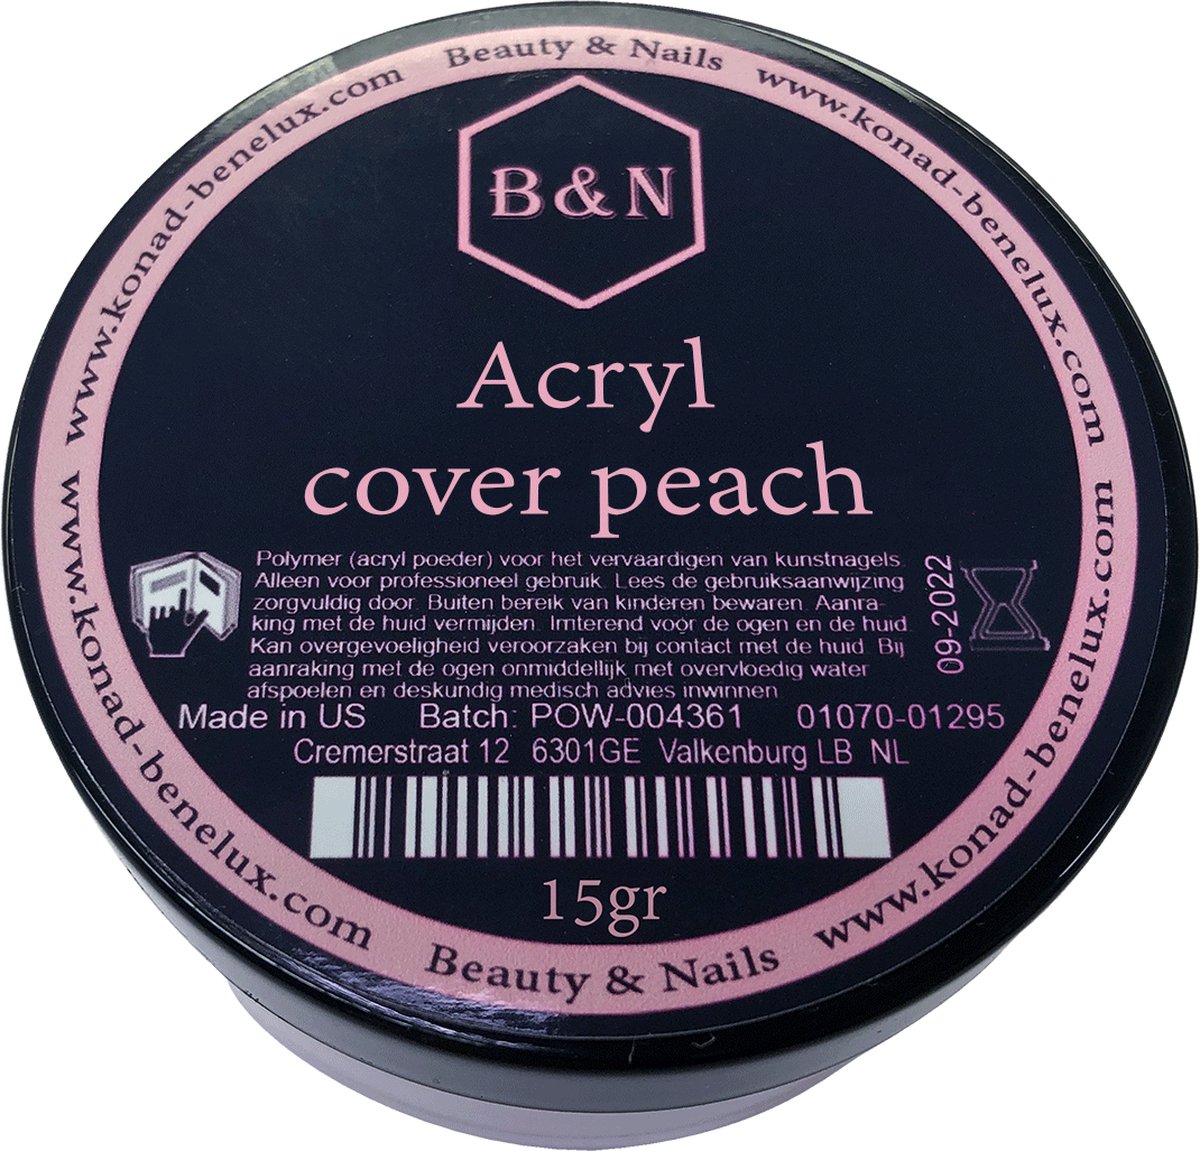 Acryl - cover peach - 15 gr | B&N - acrylpoeder - VEGAN - acrylpoeder